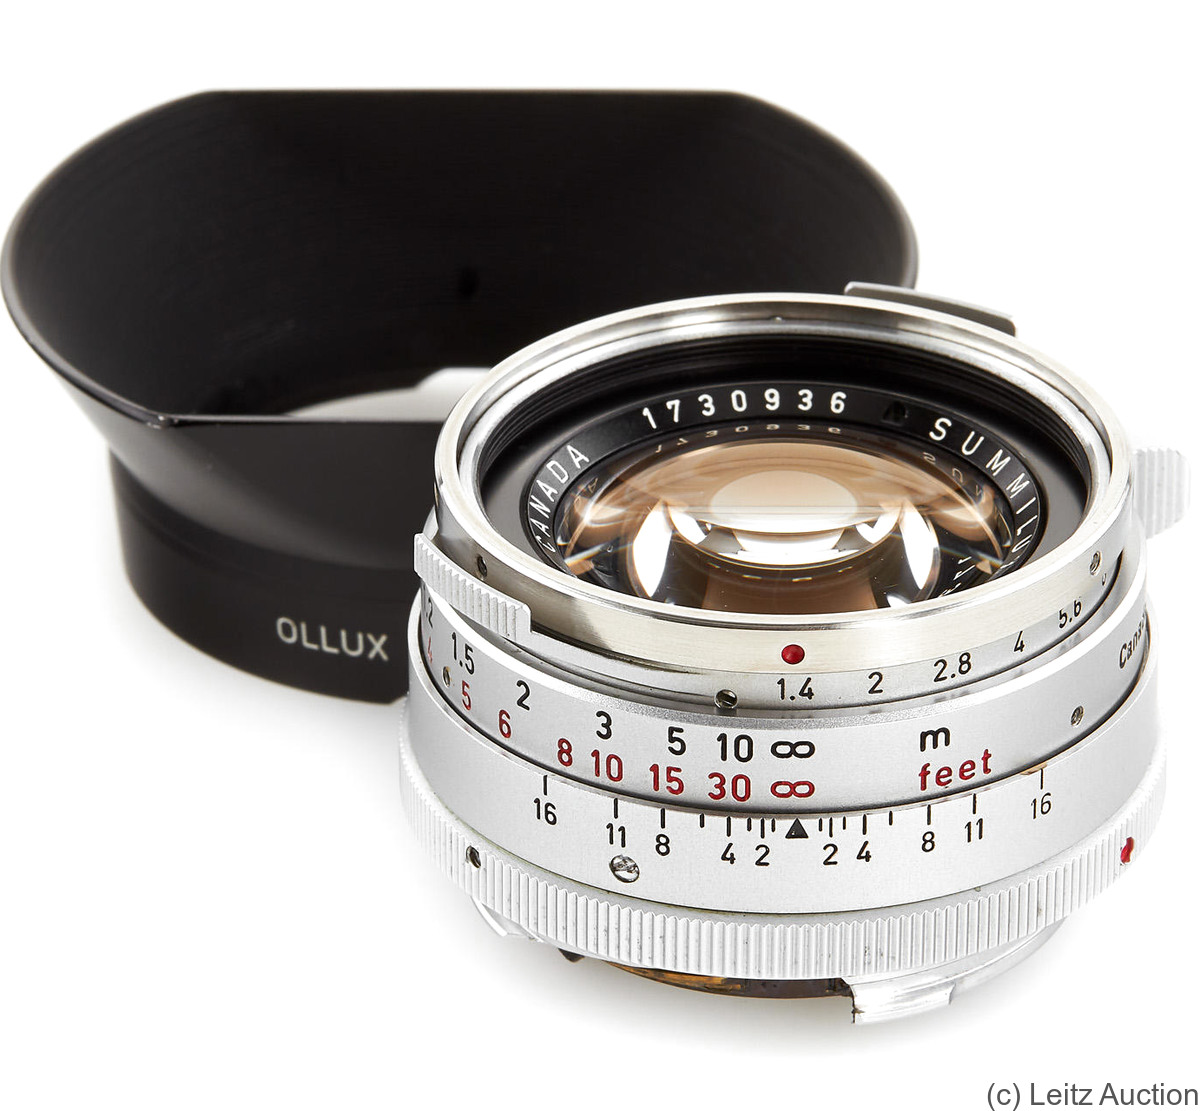 Leitz: 35mm (3.5cm) f1.4 Summilux (BM, chrome, Steel Rim) camera